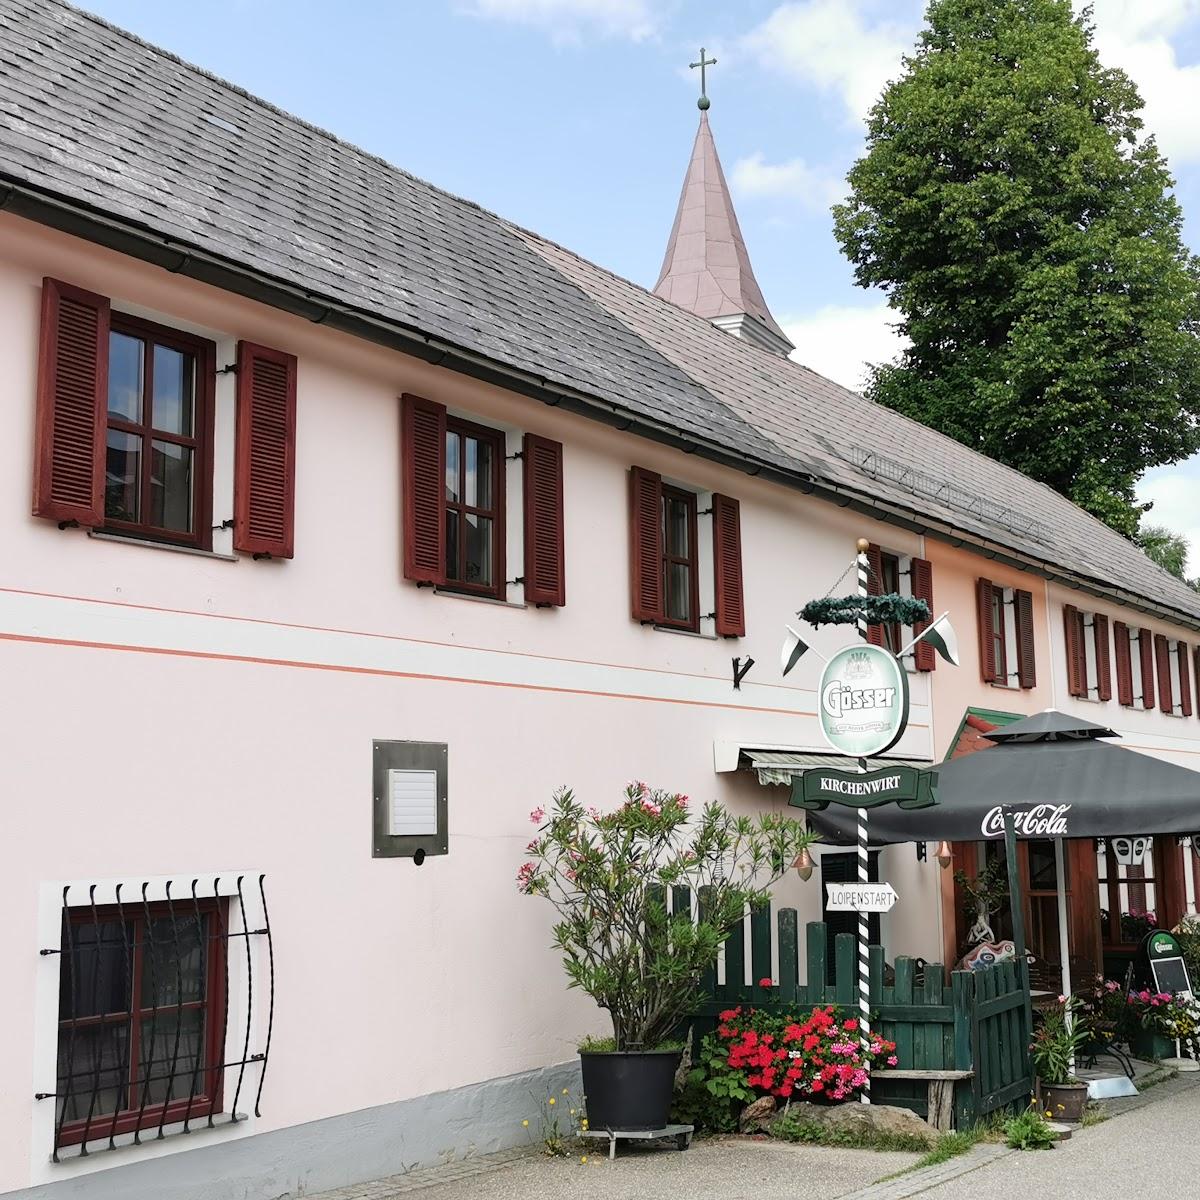 Restaurant "Gasthof Lichtenwallner" in Altmelon